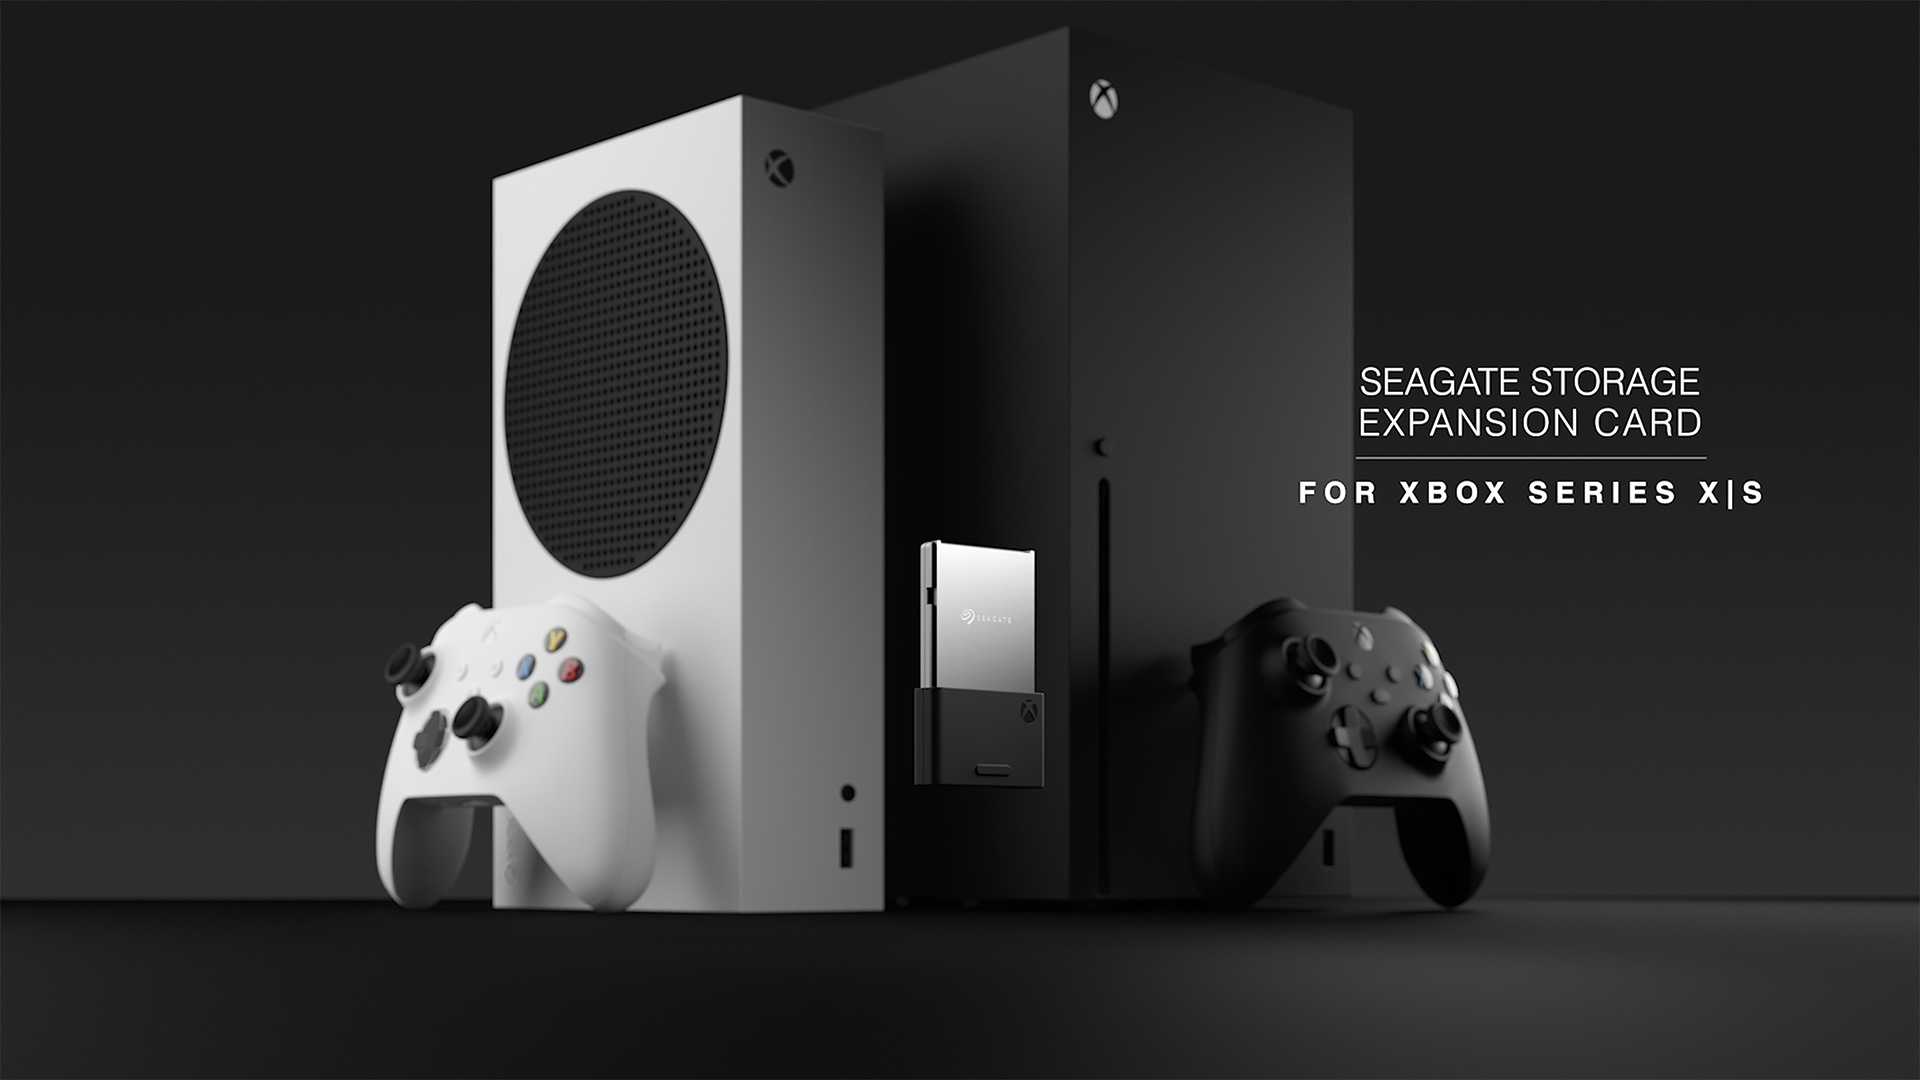 كيف تتفوق مساحات تخزين منصات Xbox Series X|S على PS5 المحدودة؟